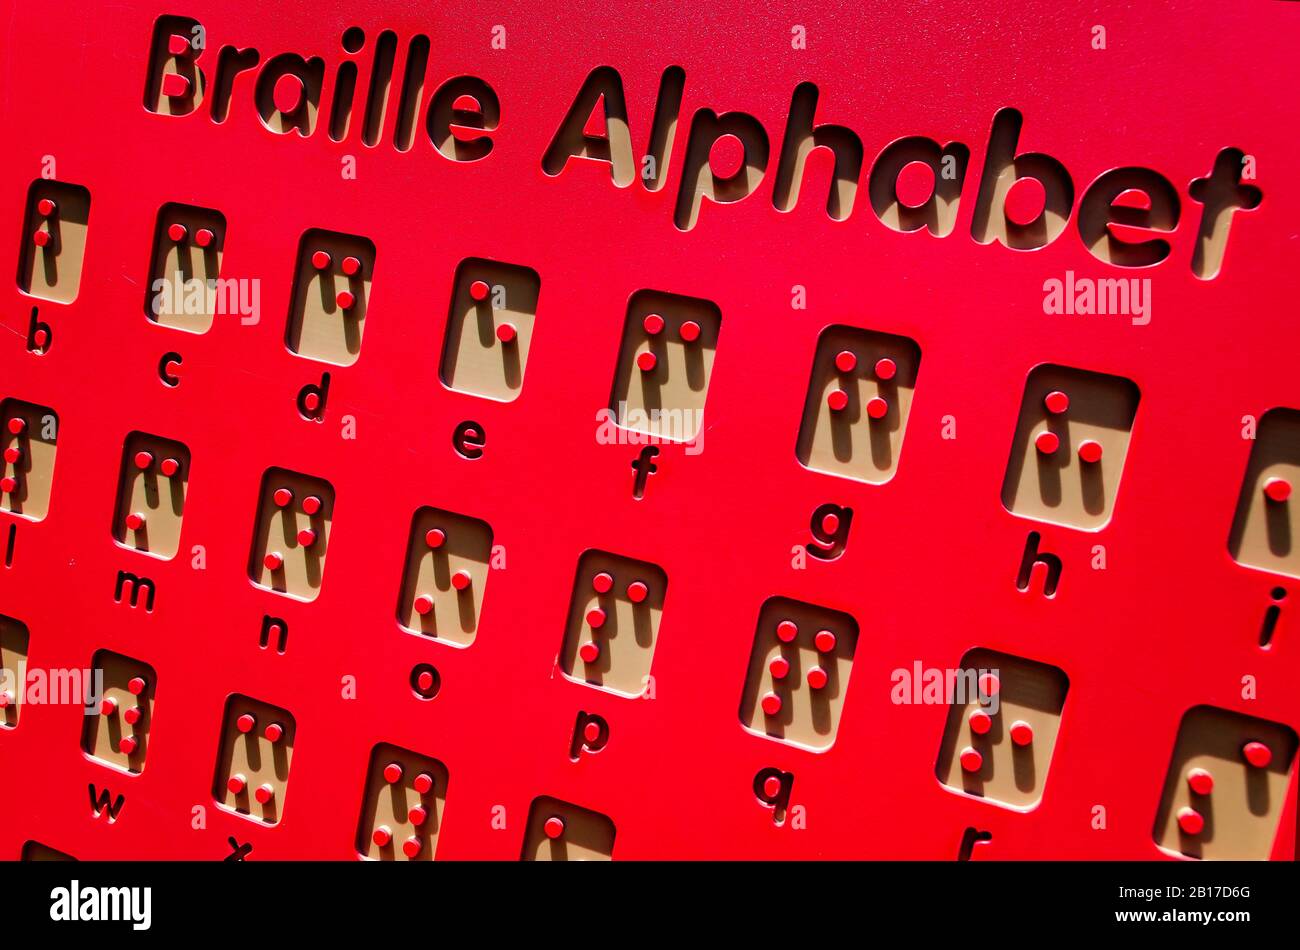 Il simbolo dell'alfabeto Braille viene visualizzato su un parco giochi accessibile e inclusivo, il 26 luglio 2019, a Vicksburg, Mississippi. Foto Stock